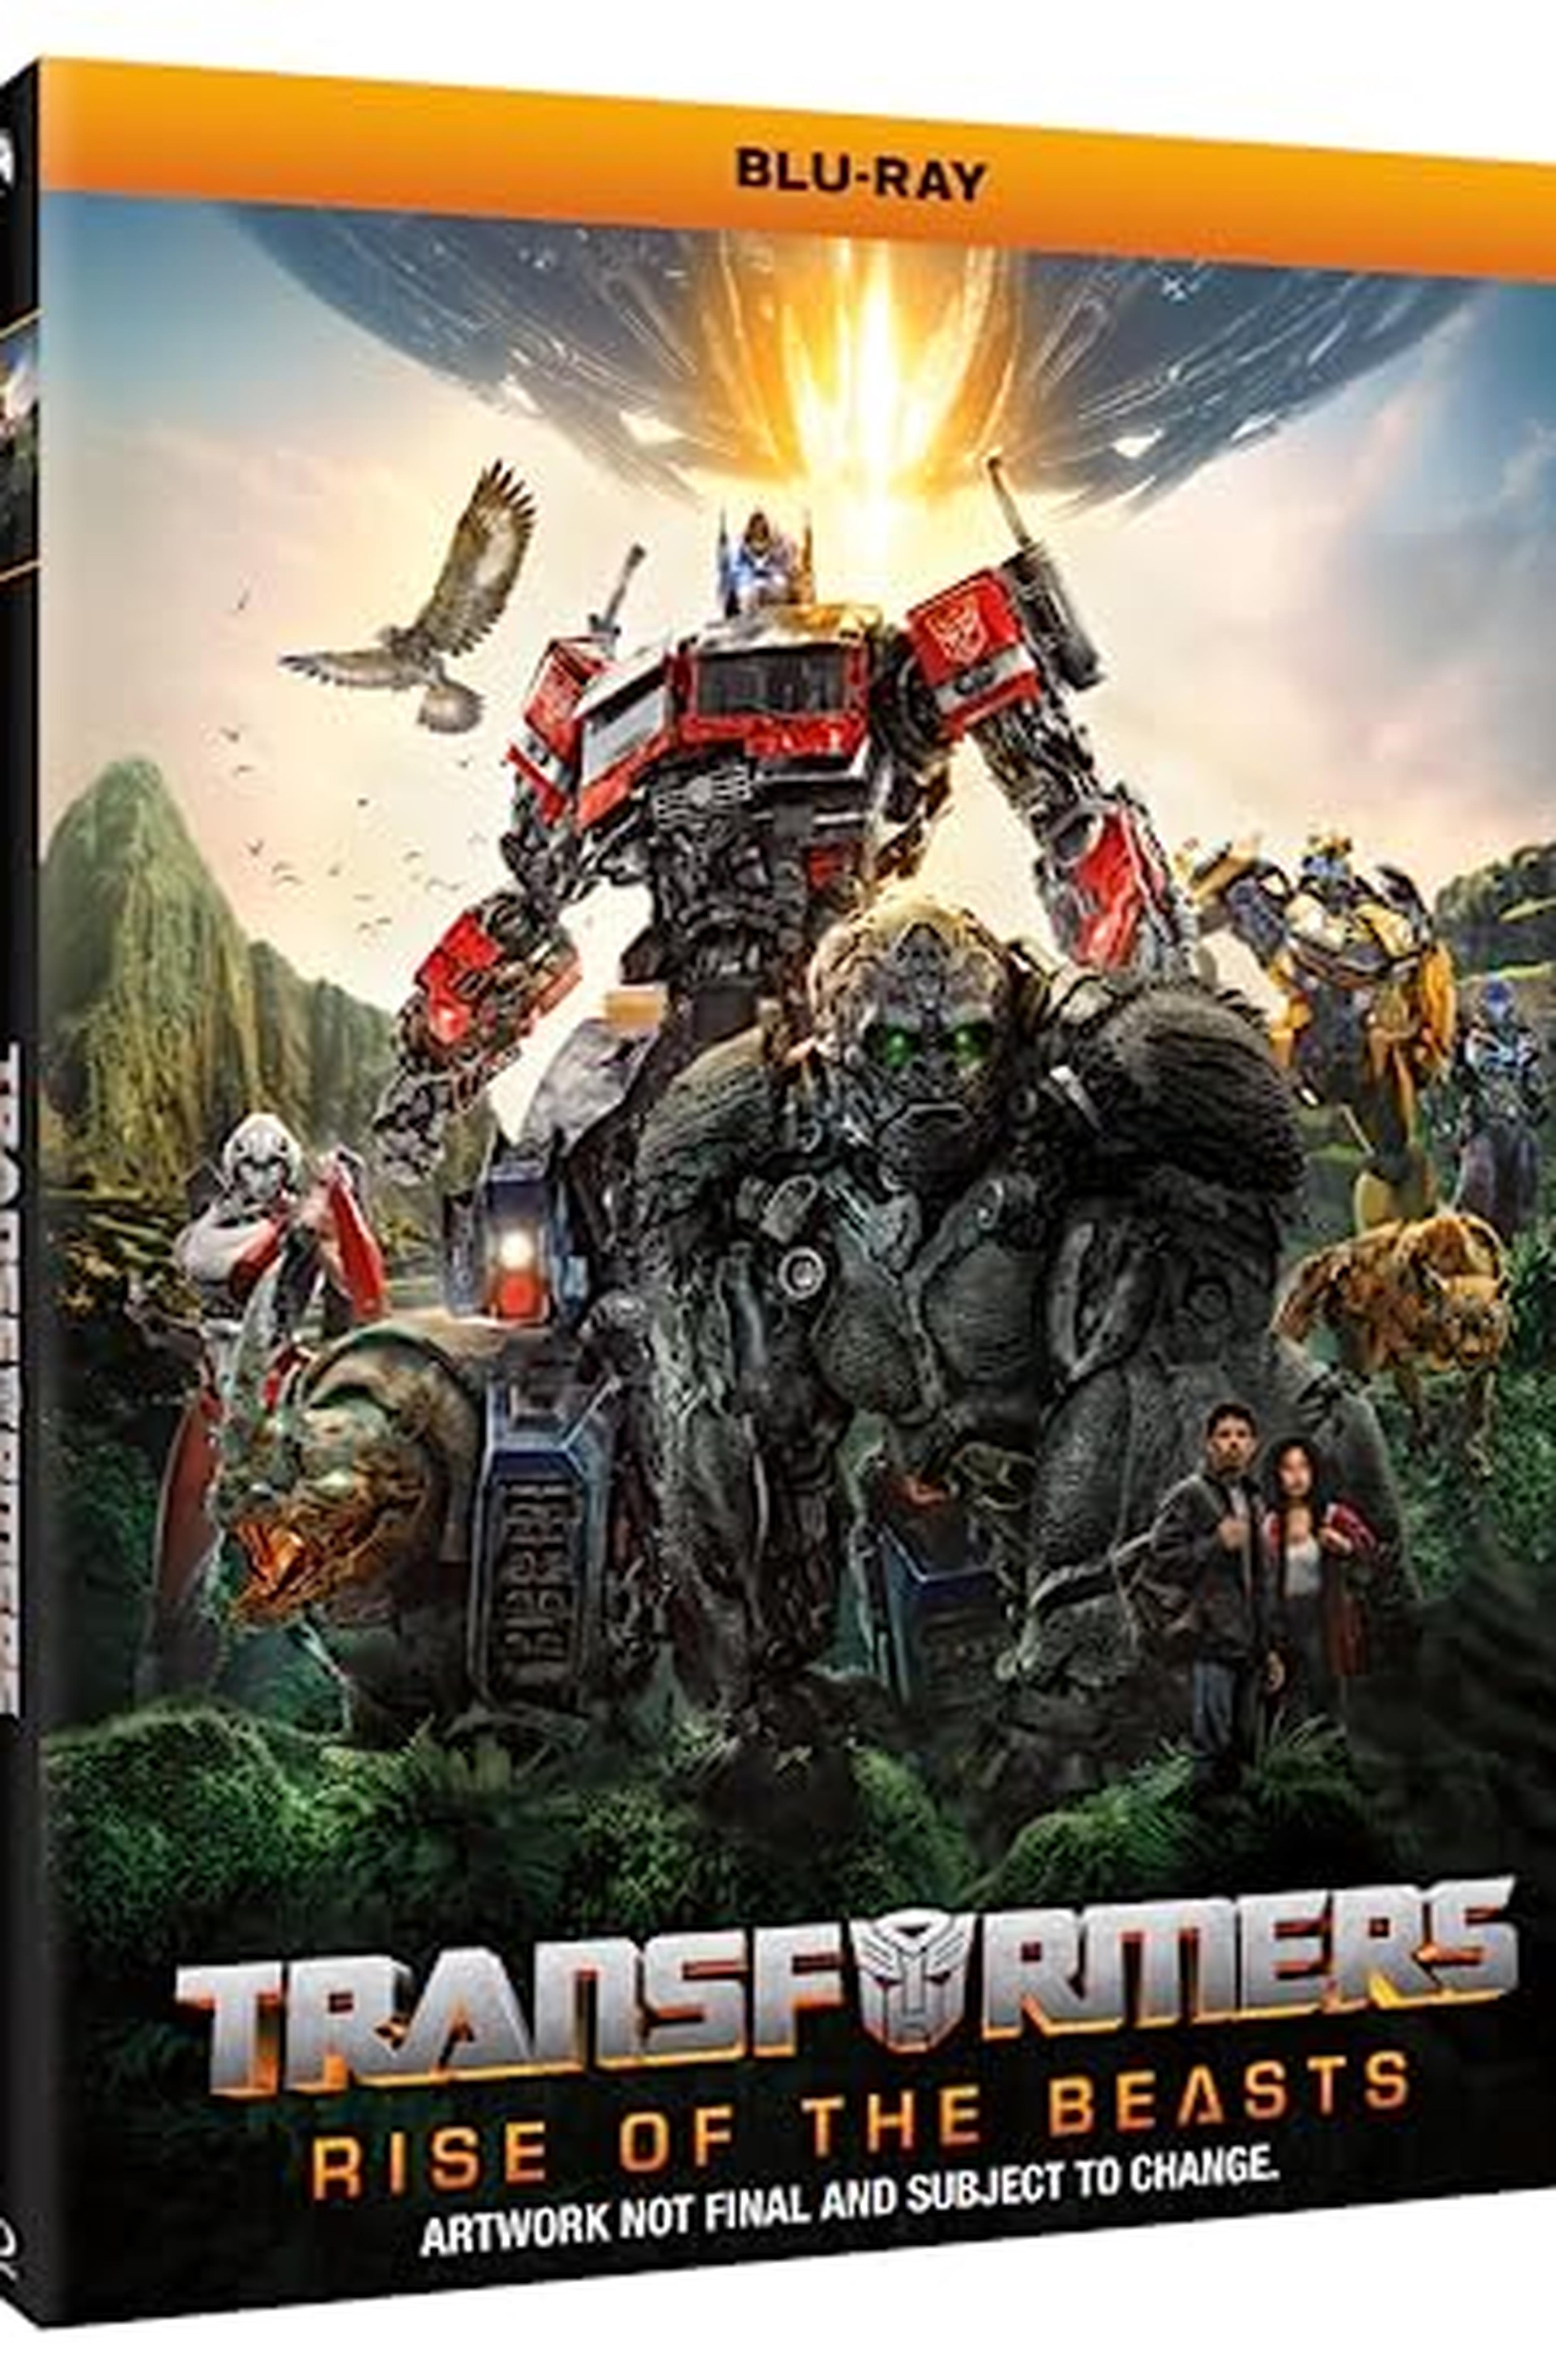 Transformers - Il Risveglio (Blu-ray)